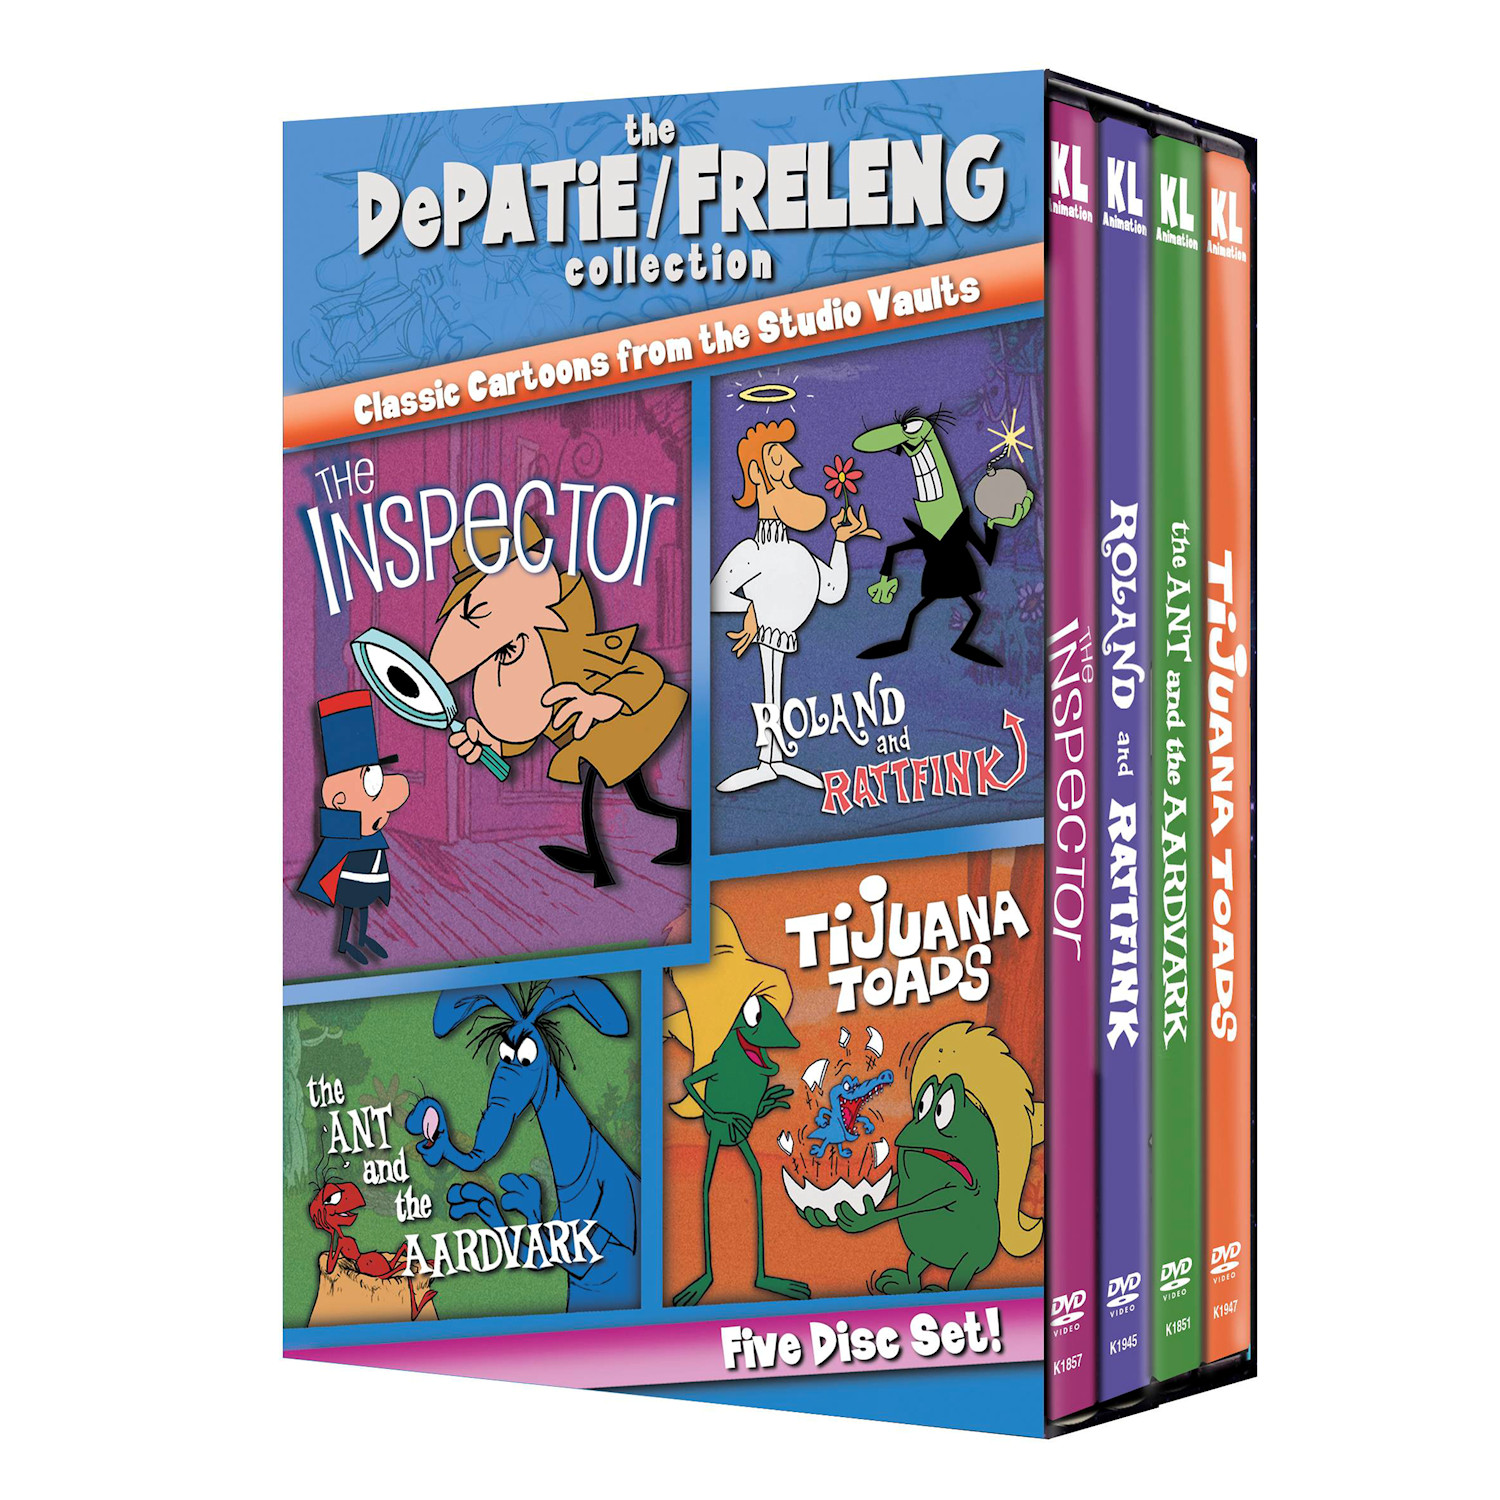 DePatie/Freleng Classic Cartoons Collections - Set 1 DVD & Blu-Ray | Acorn  | XD4292